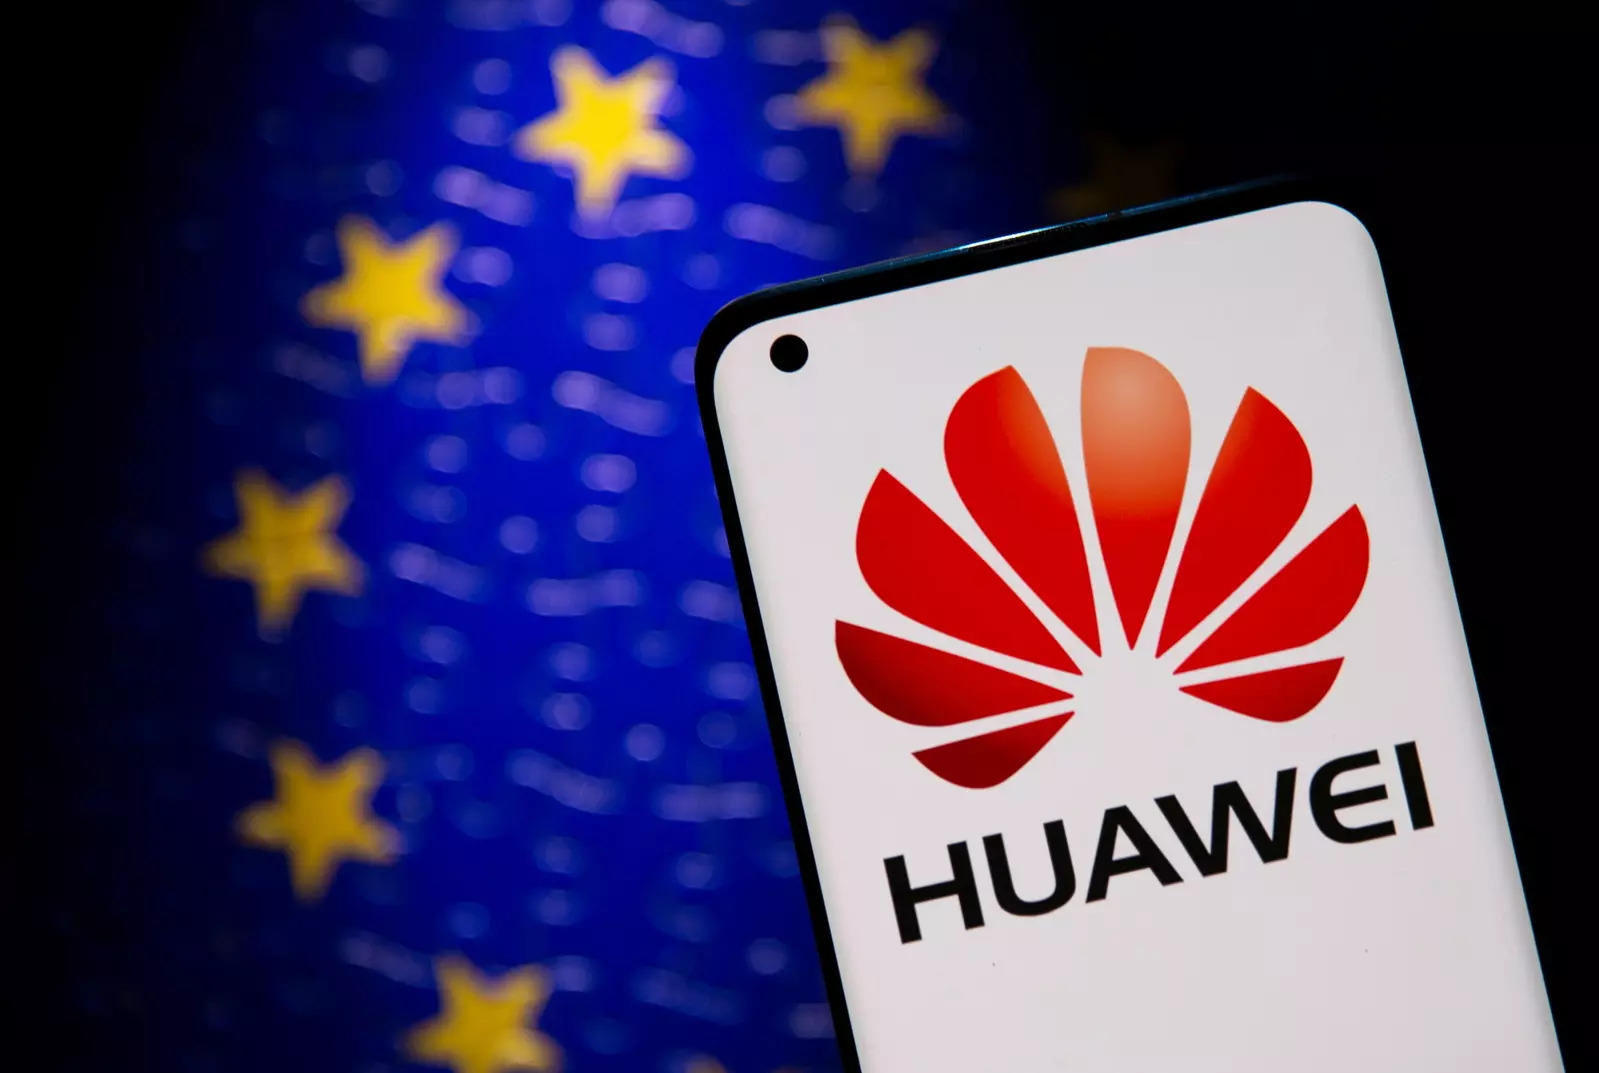 Huawei paid Washington lobbyist Podesta $1 million: Sources